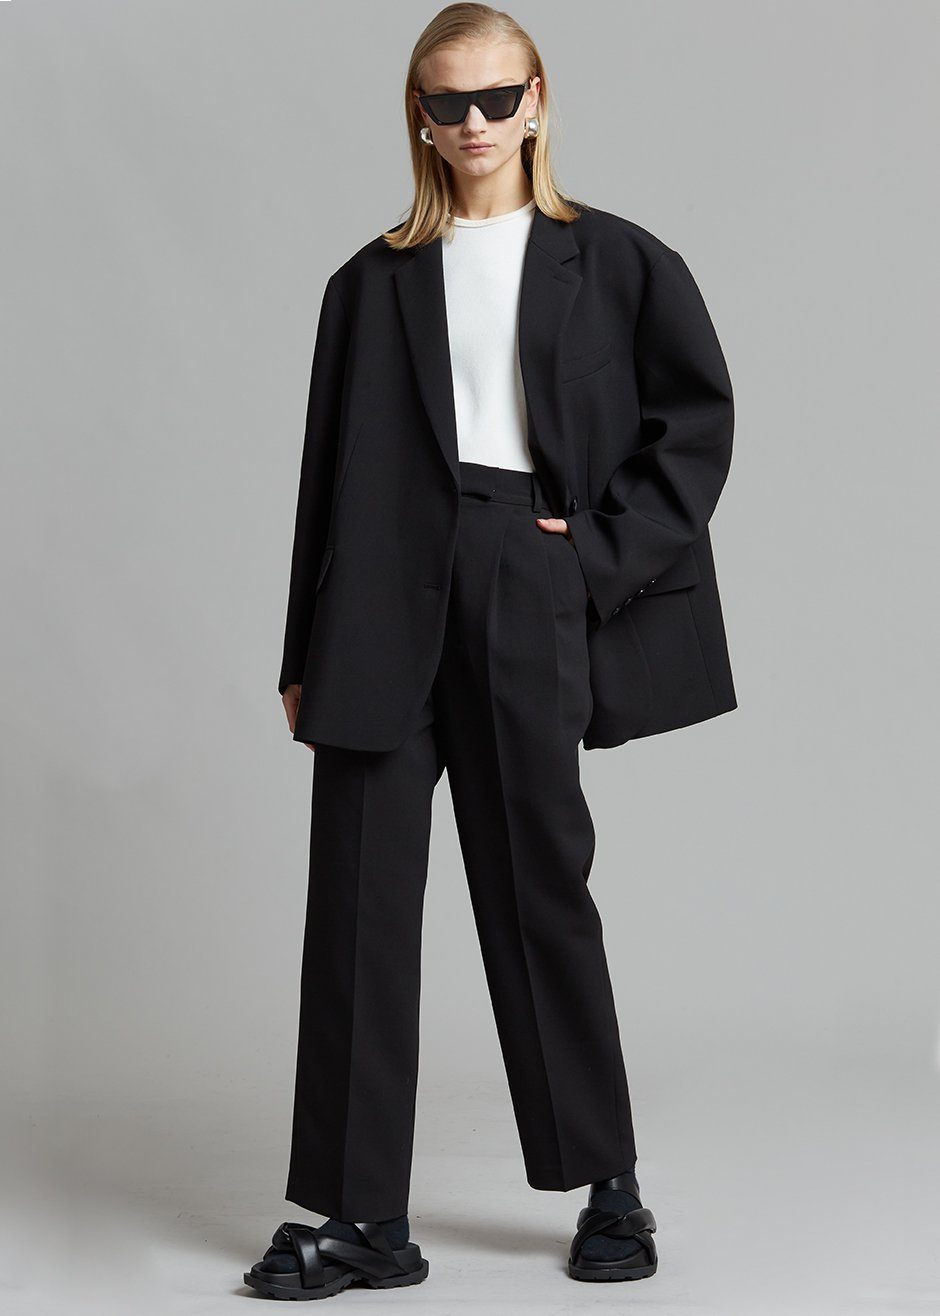 Ike Behar Black Suit Plain Front Pants | Louie's Tux Shop